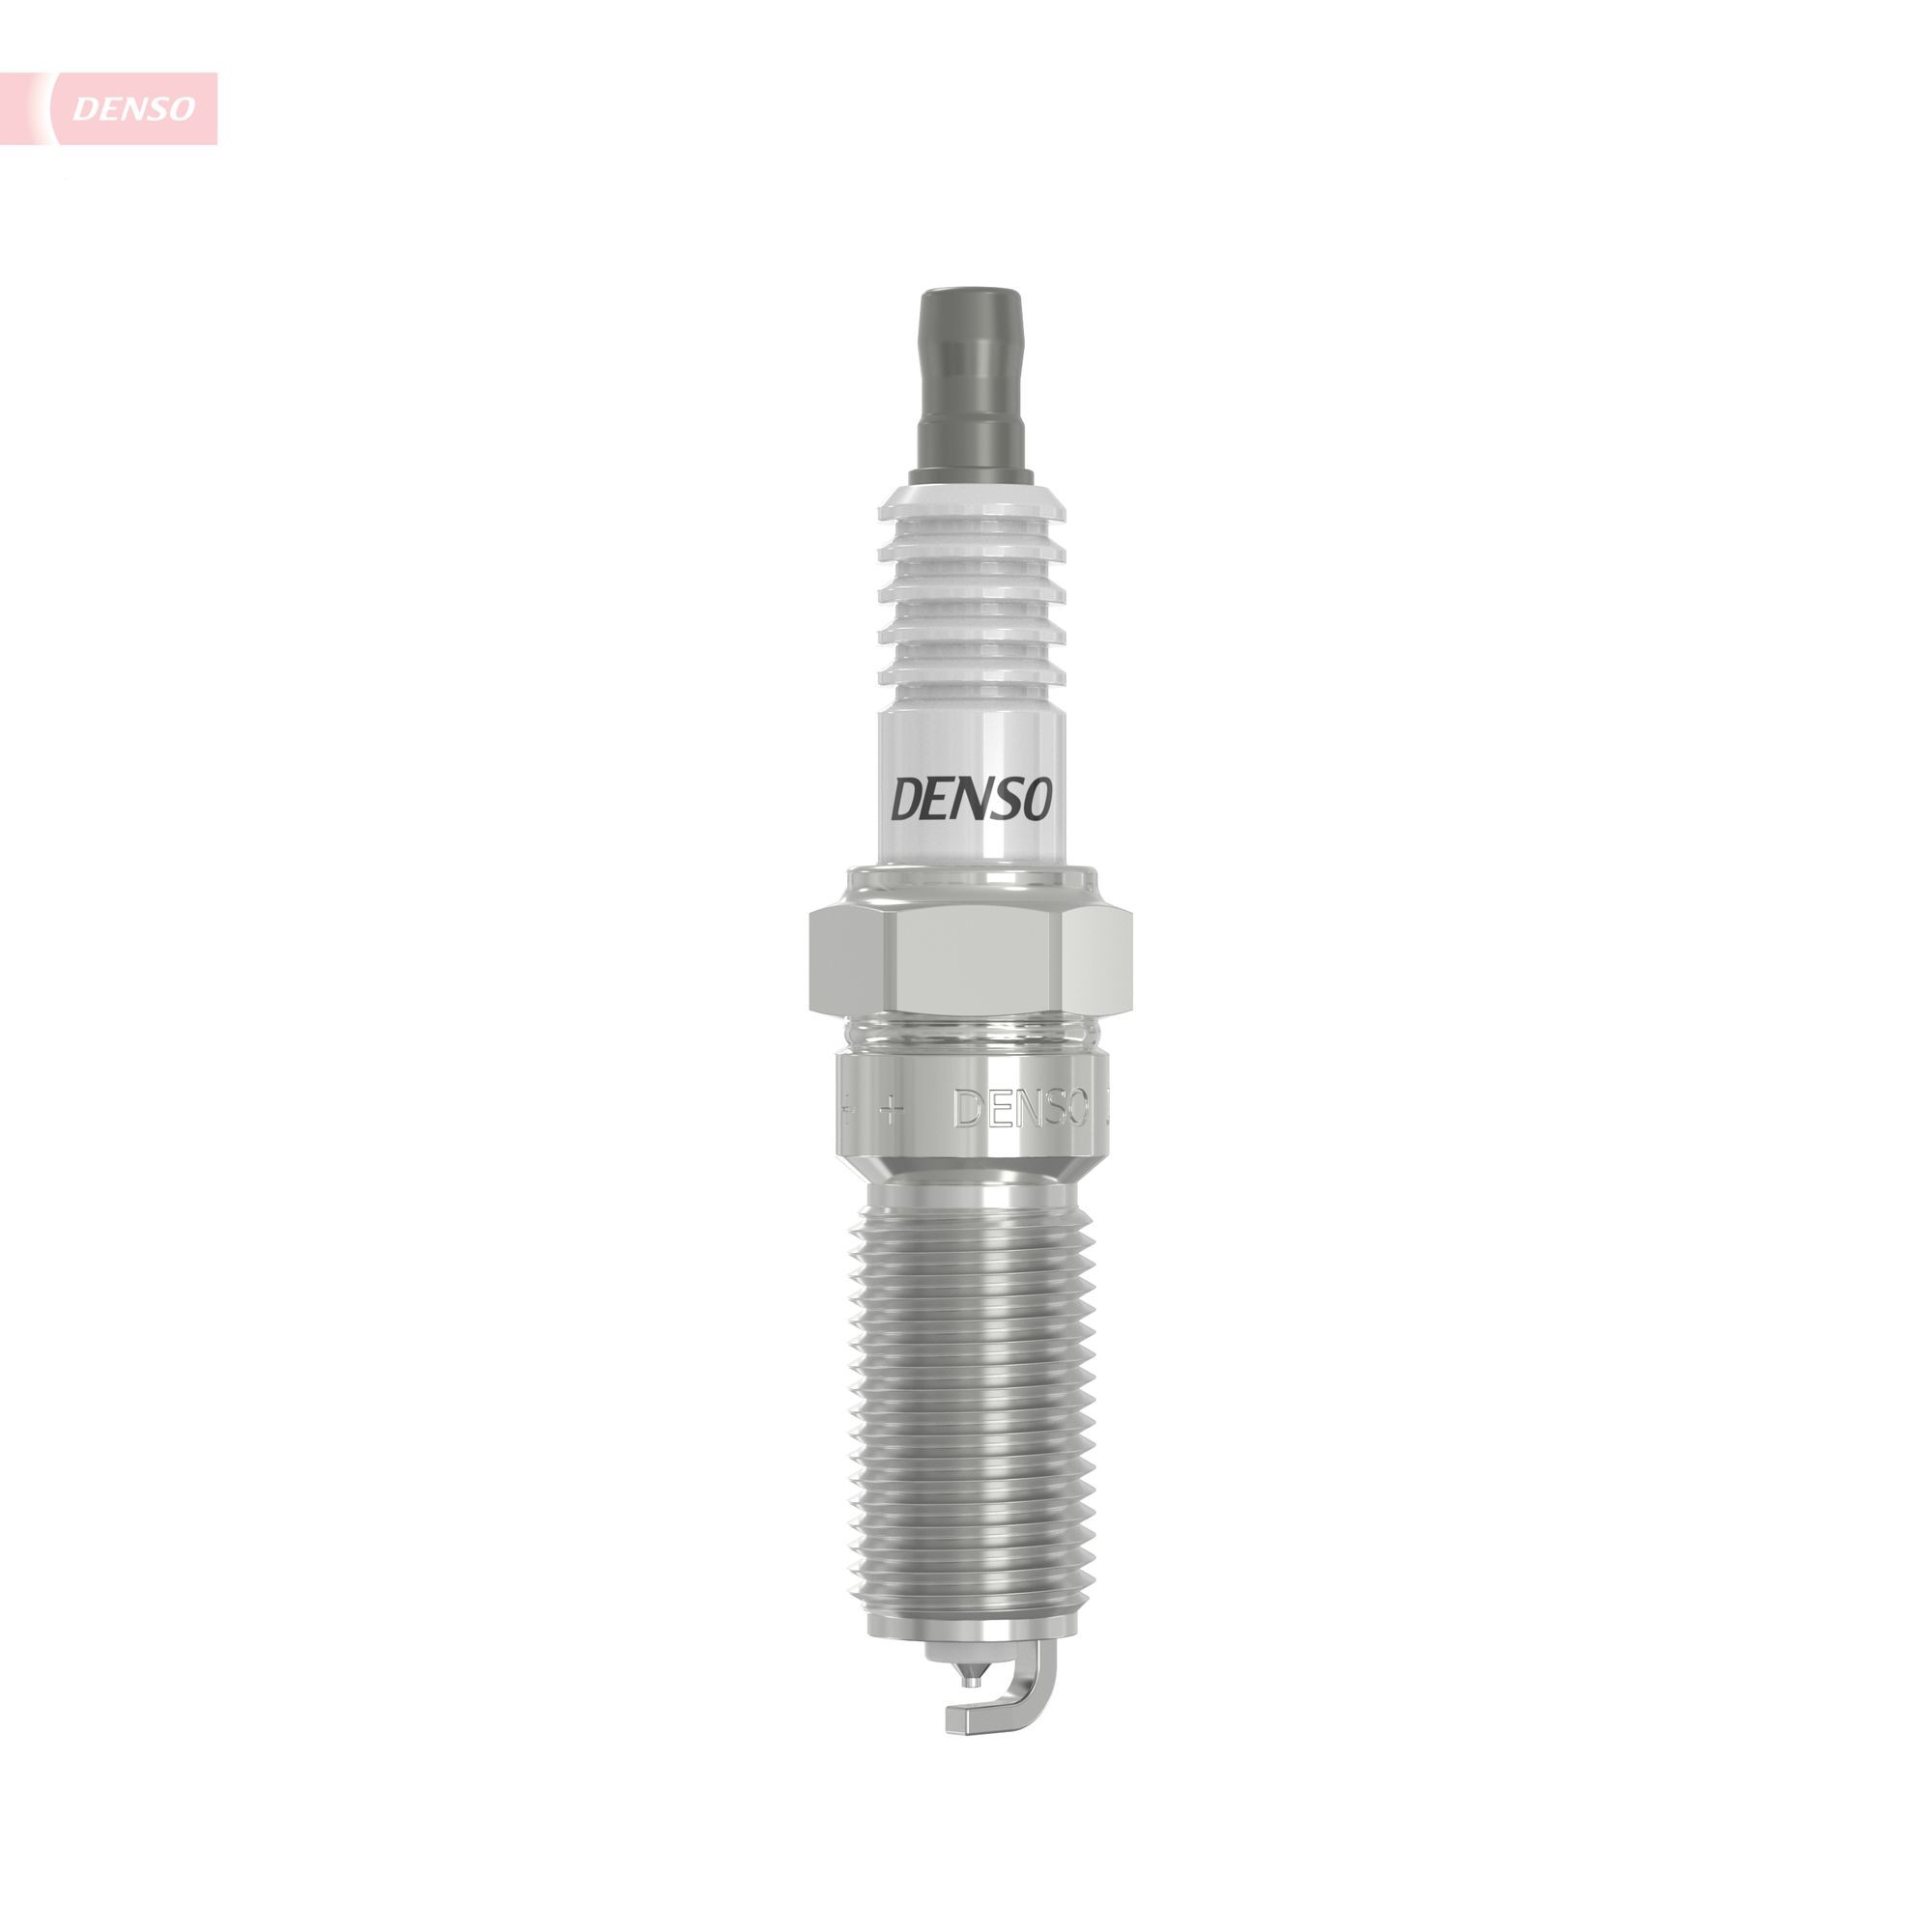 DENSO Platinum PT16VR10 Spark plug Spanner Size: 16